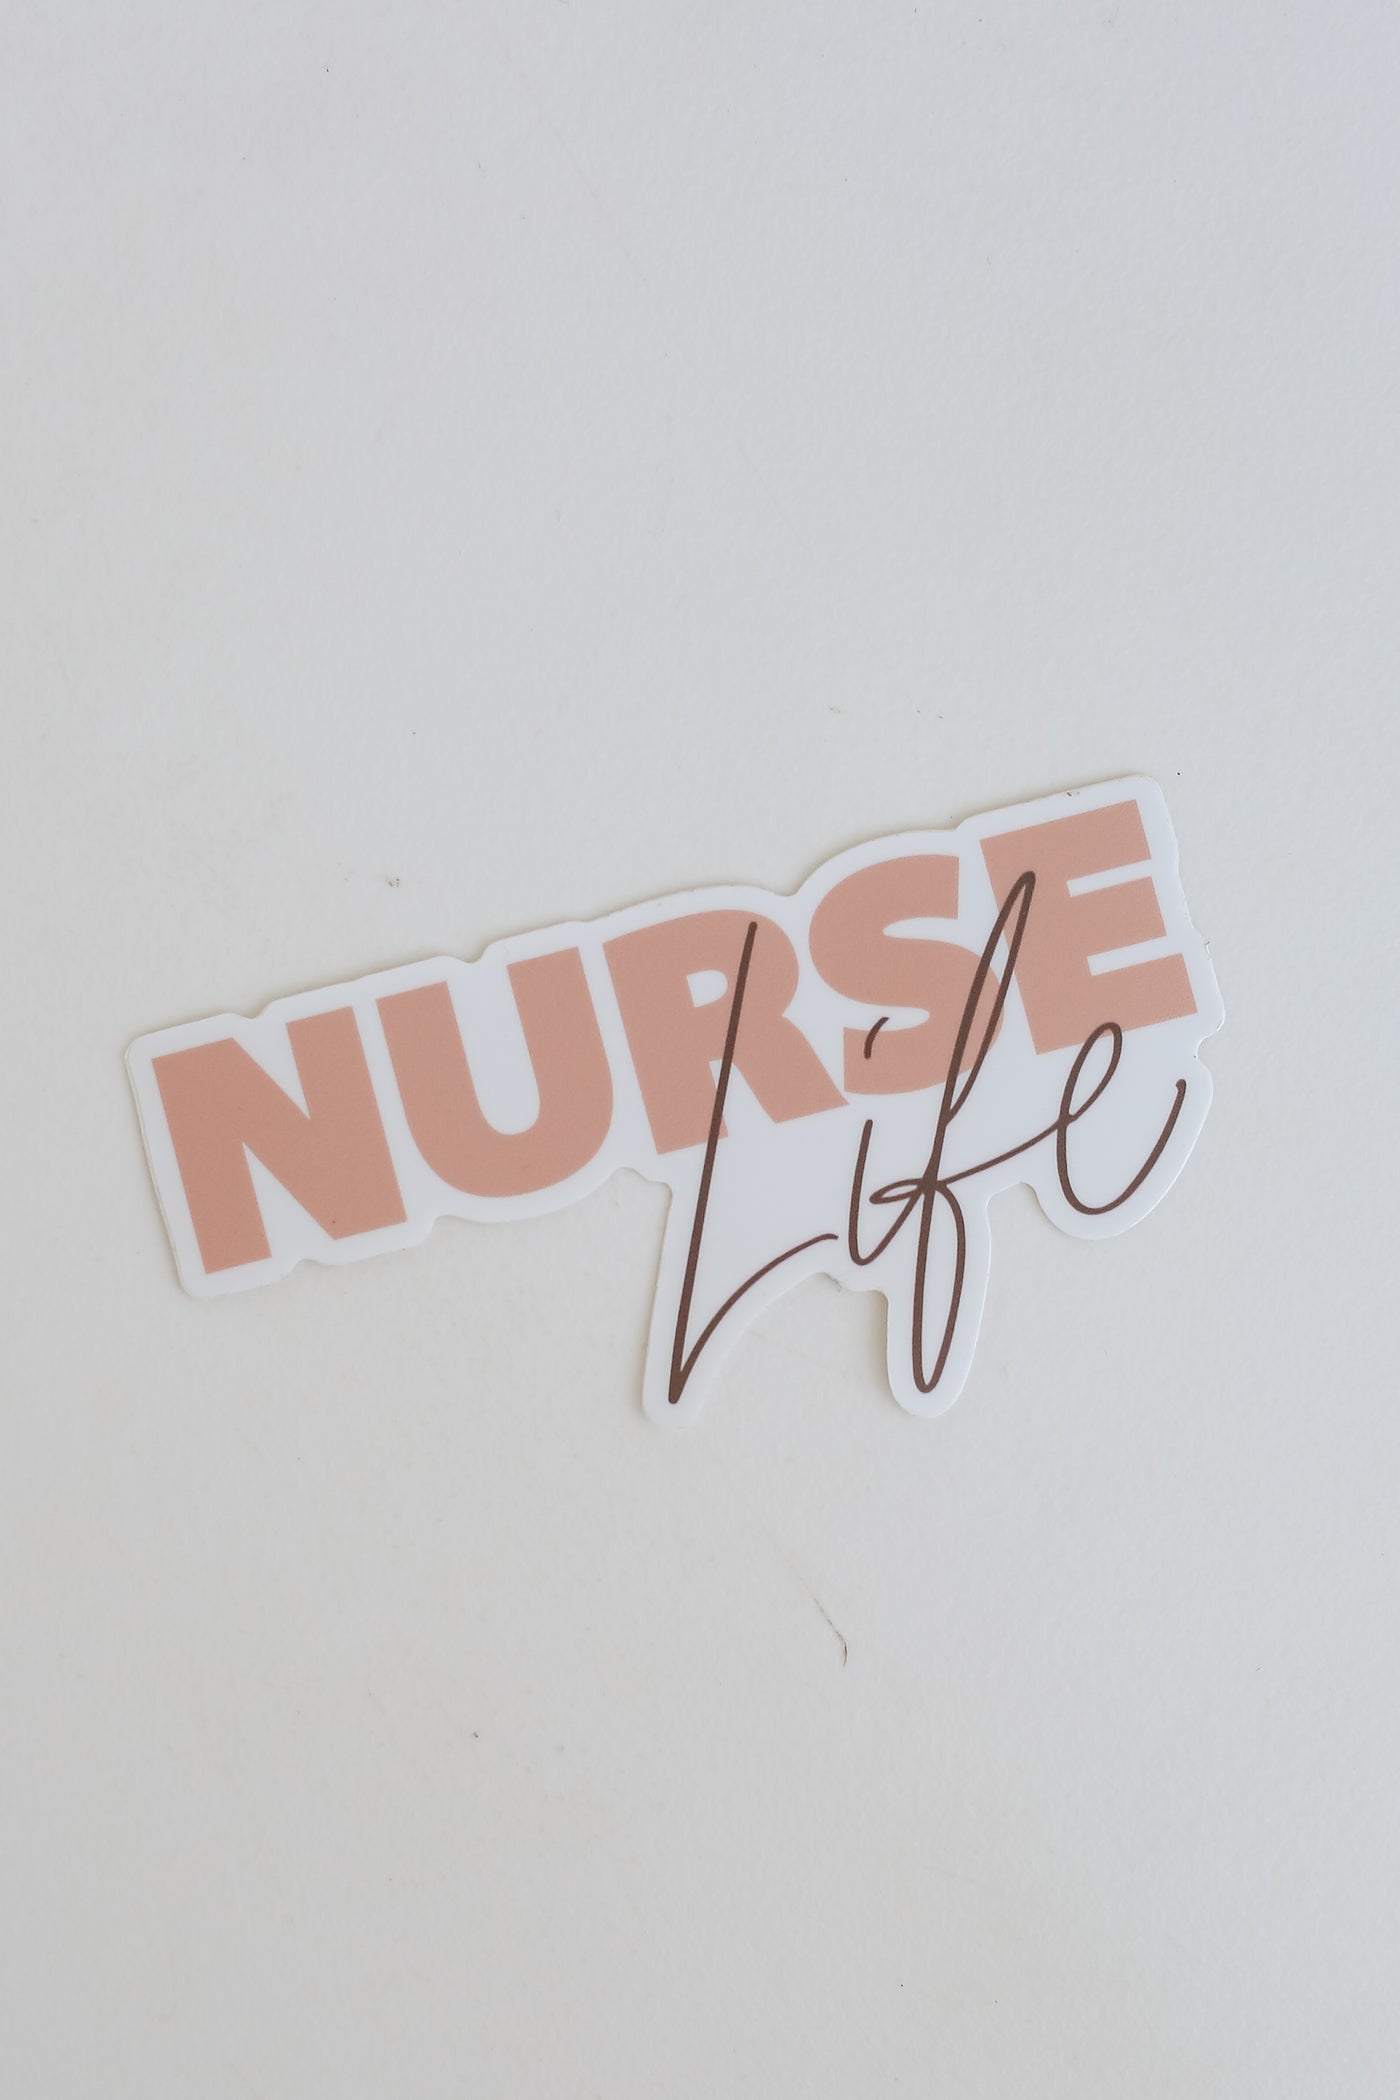 cute nurse sticker